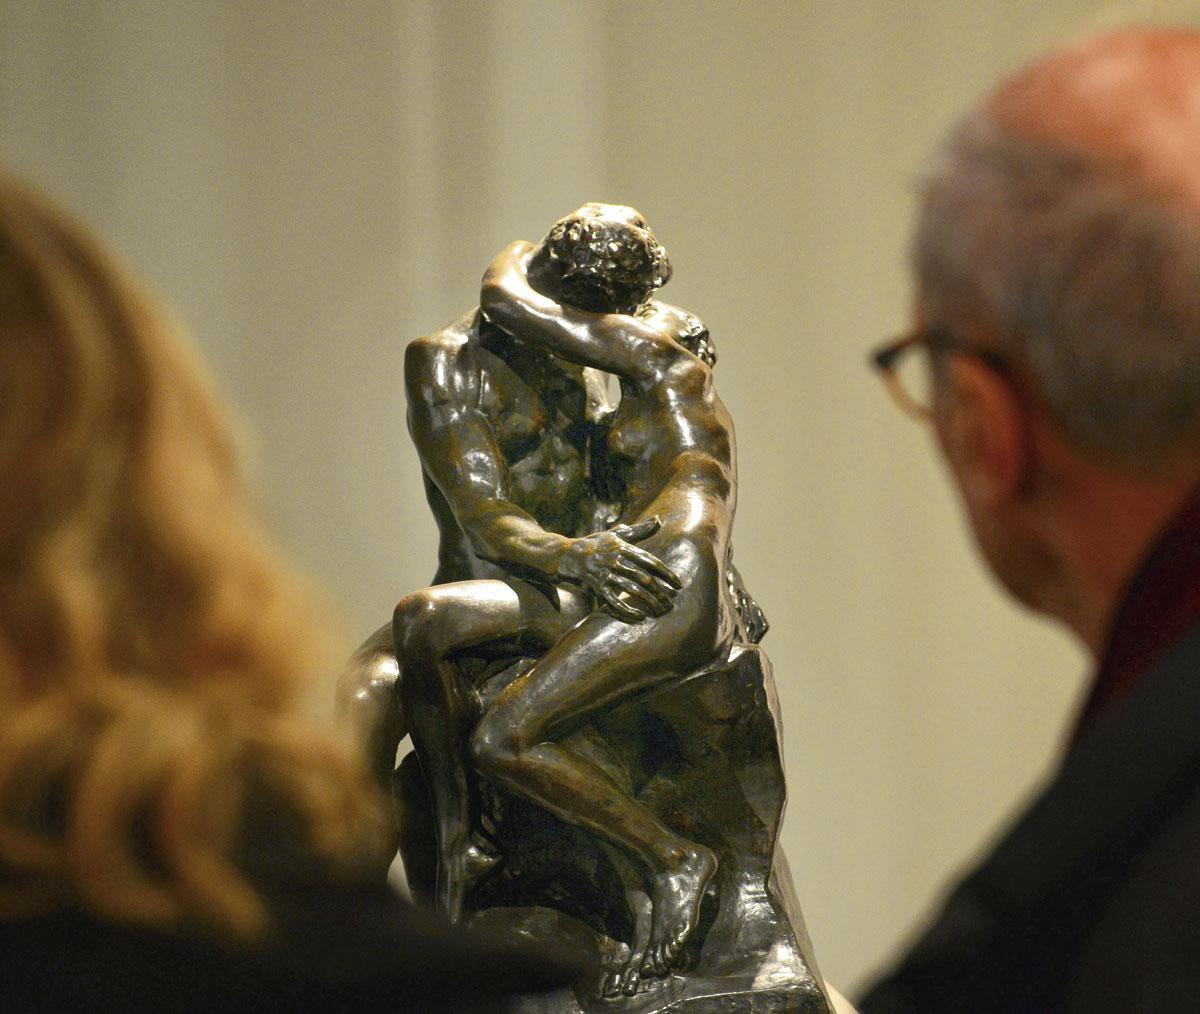 Le Baiser, de Rodin. En 1889, seuls les hommes pouvaient observer la sculpture, dissimulée derrière un rideau.